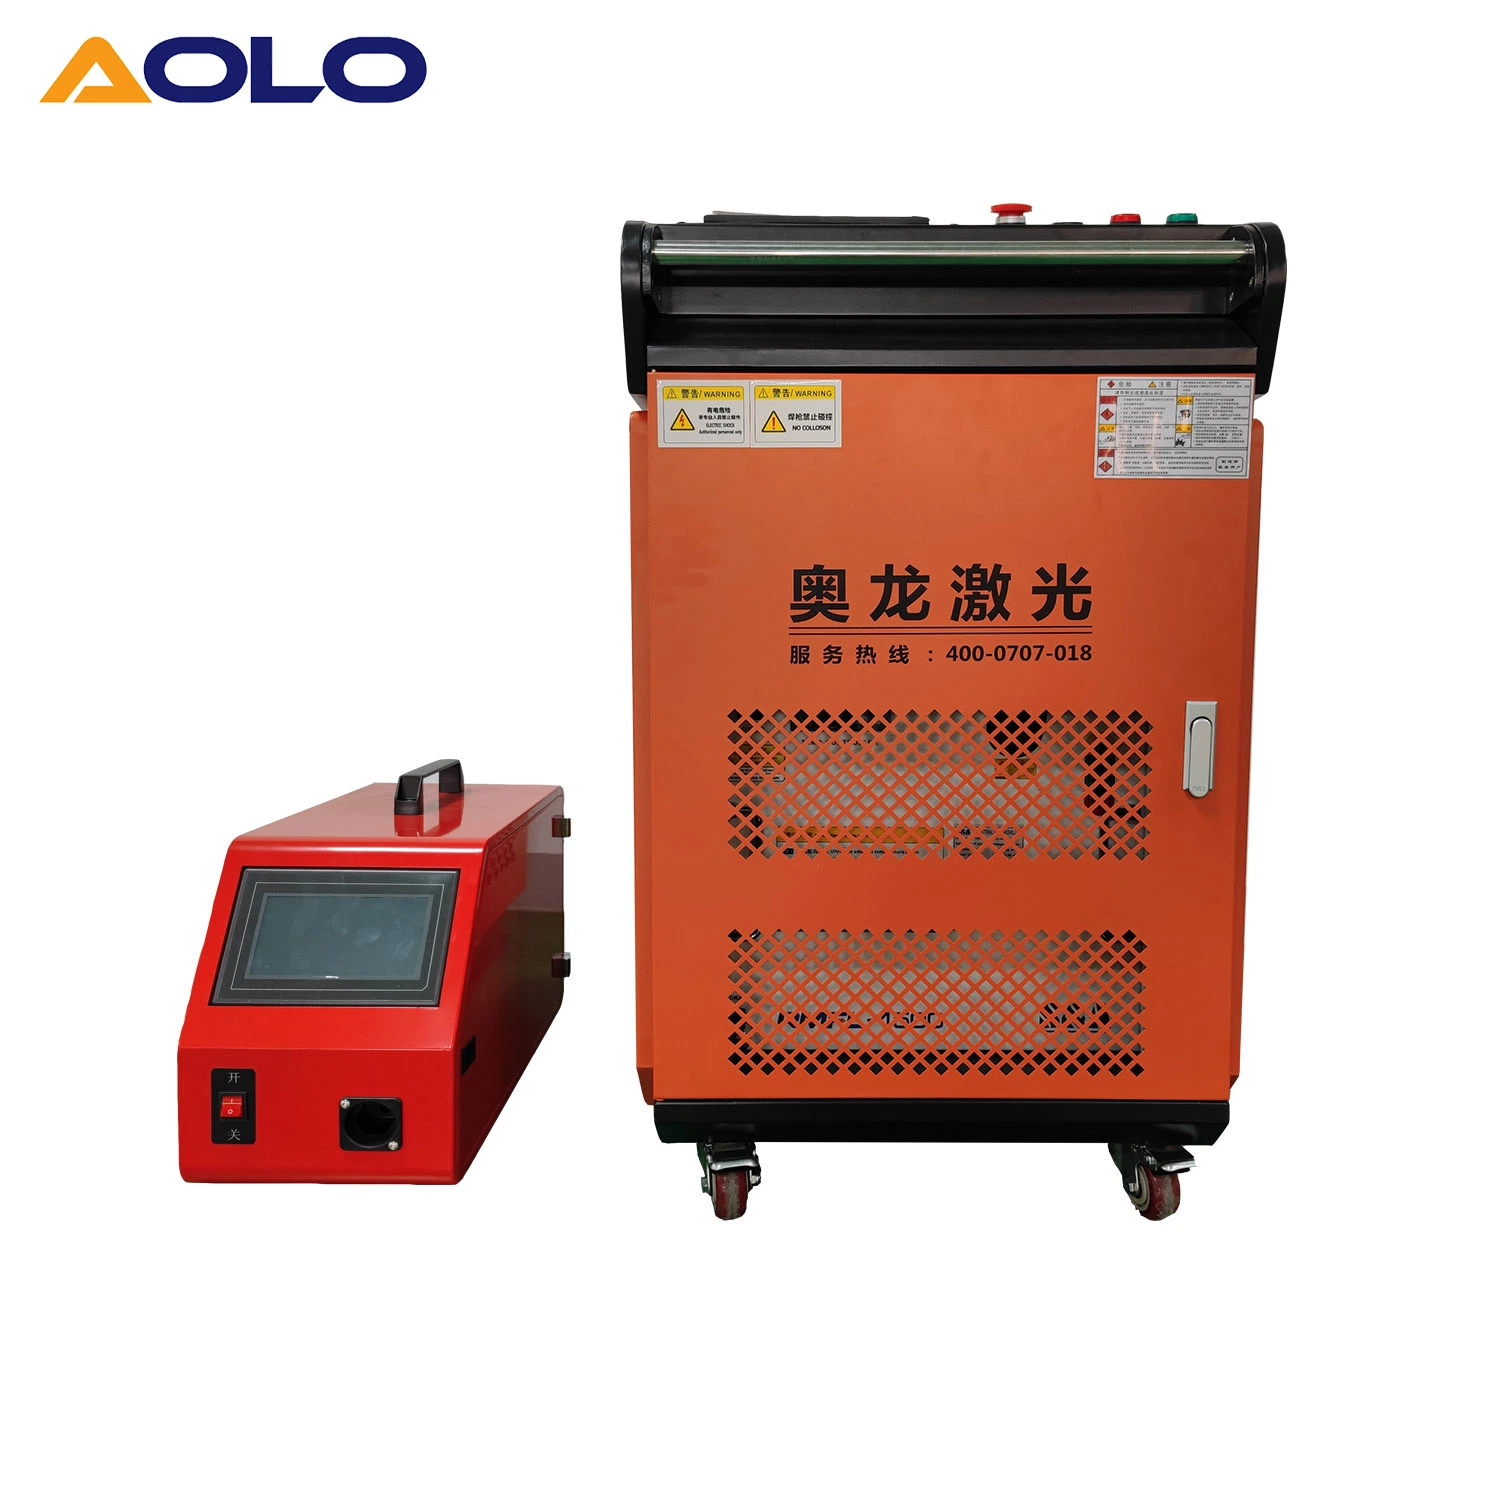 Ferro de aço inoxidável portátil automático de 1000 W e 1500 W, 2000 W, cobre máquina de soldar a laser de fibra portátil